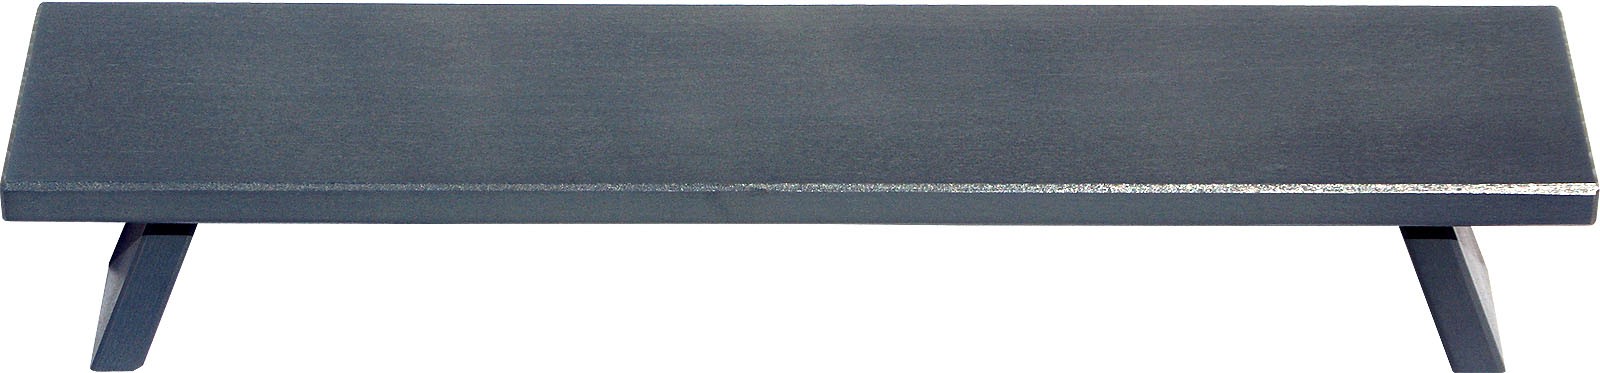 Fensterbank, breit - grau, 60 cm